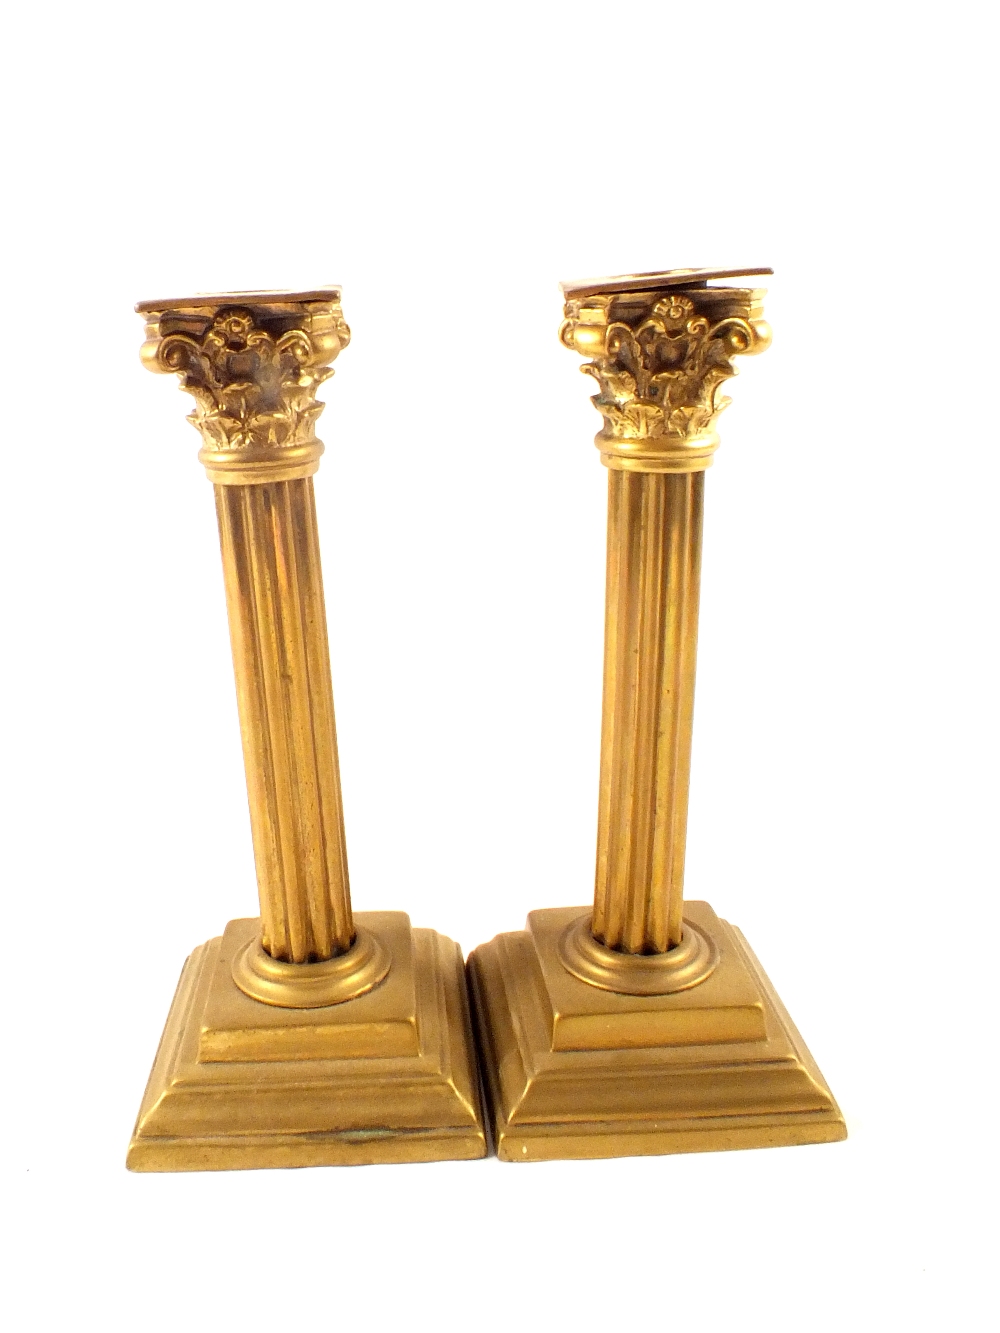 A pair of Victorian brass Corinthian column candlesticks